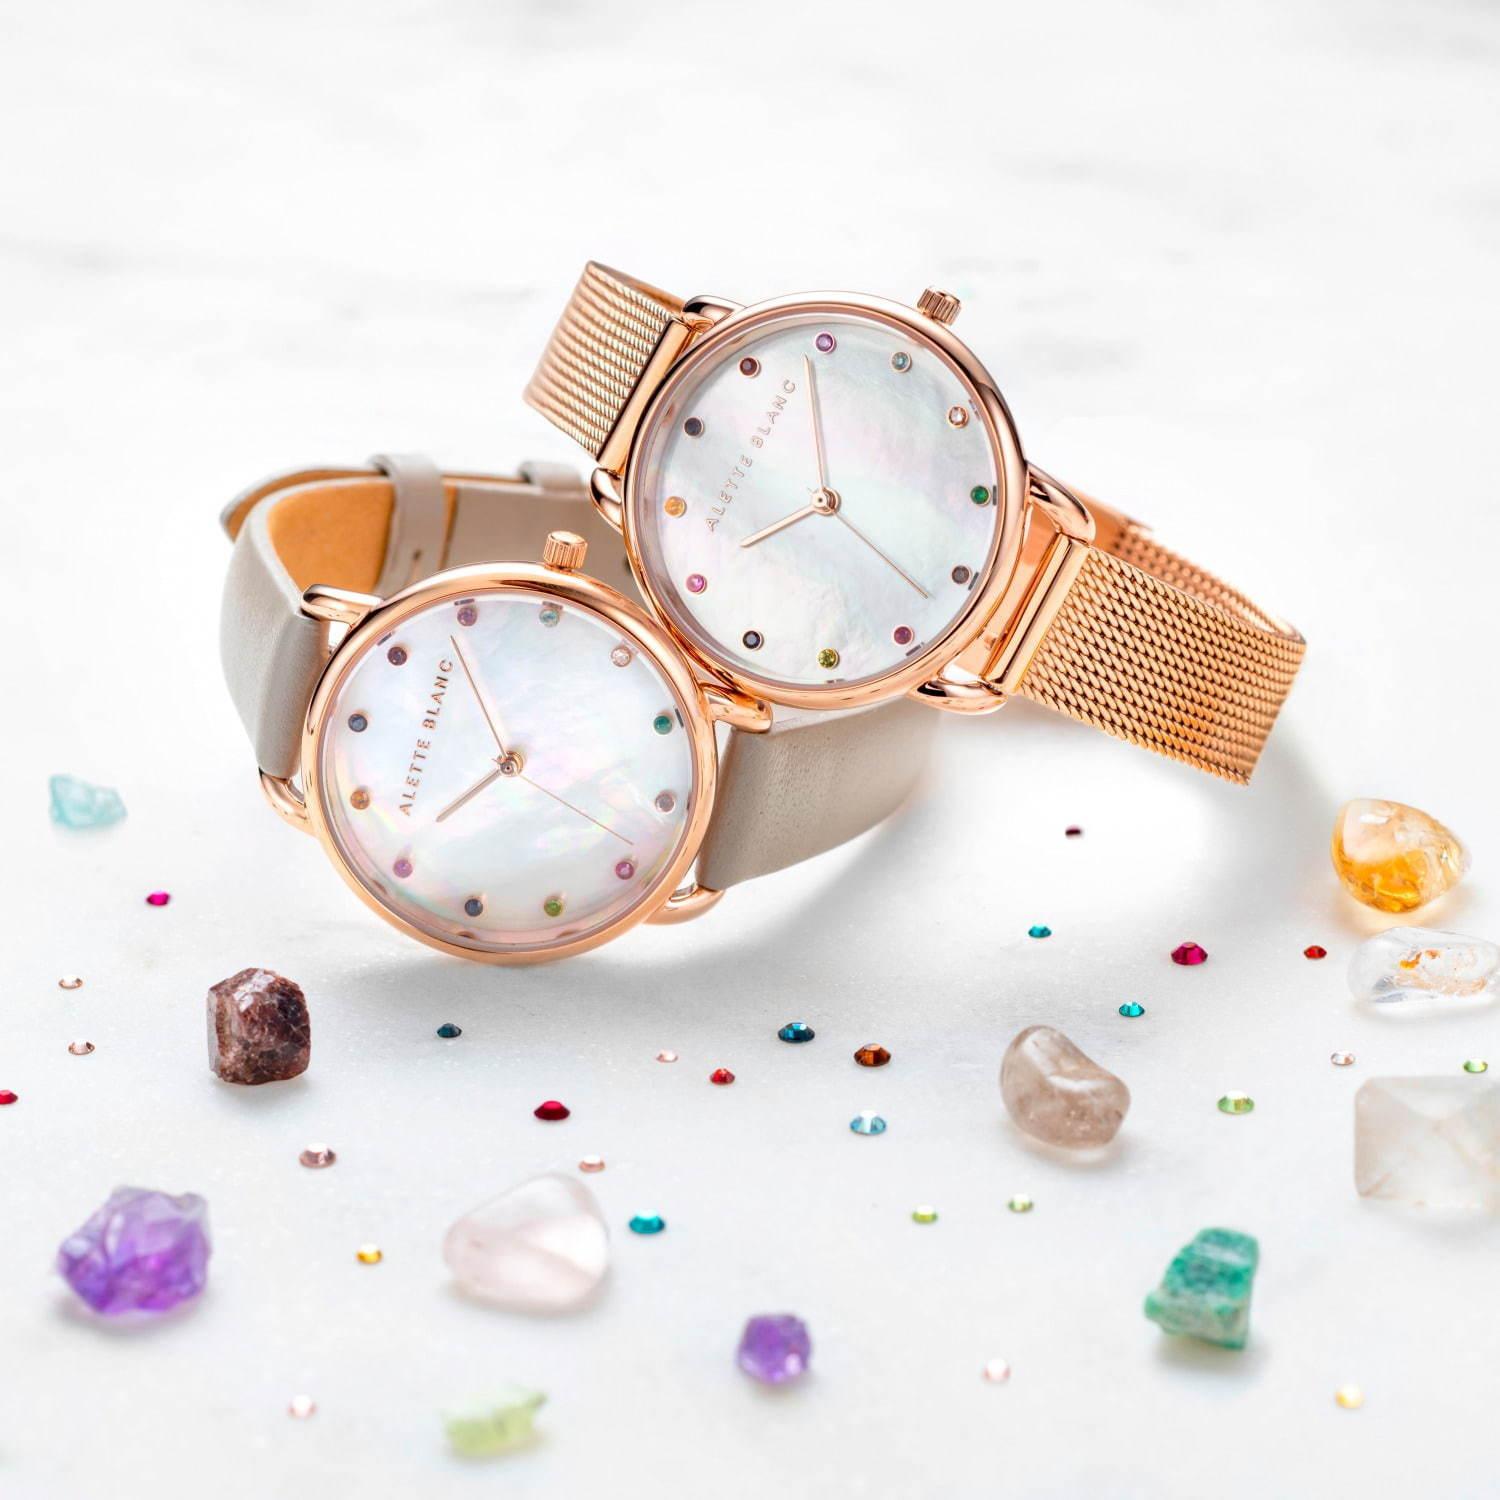 アレットブラン“誕生石”を飾った腕時計「バースストーン」がミニサイズに、煌めくルビーやサファイヤ コピー